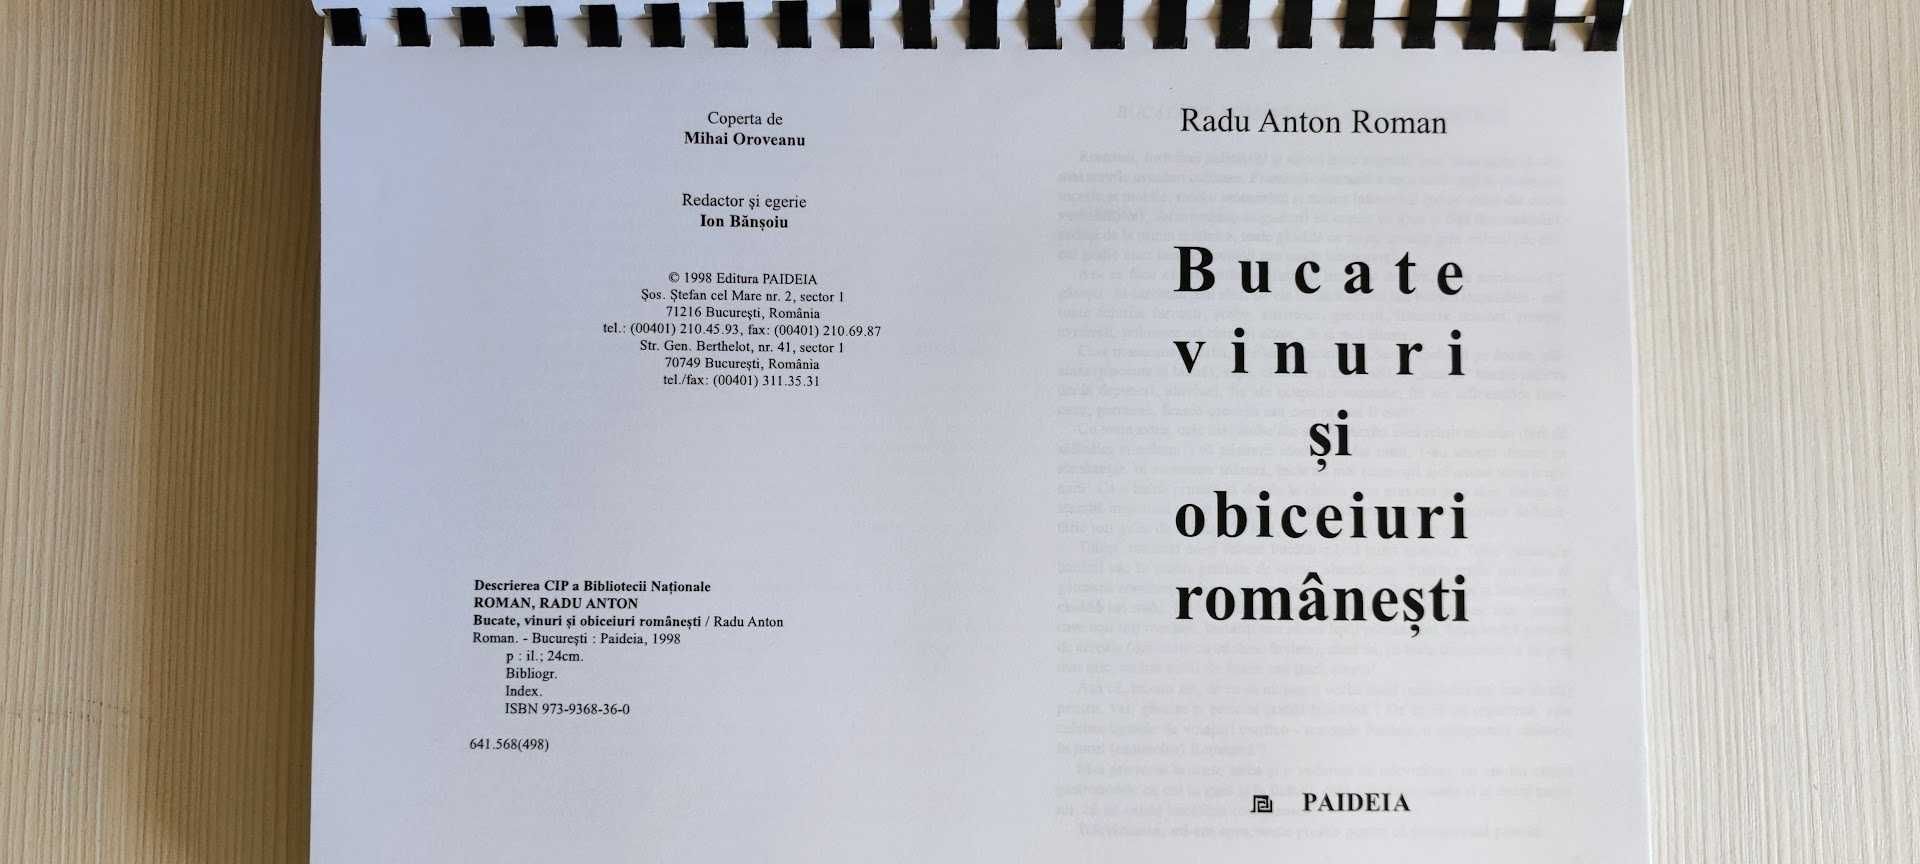 Bucate, vinuri şi obiceiuri româneşti -Radu Anton Roman